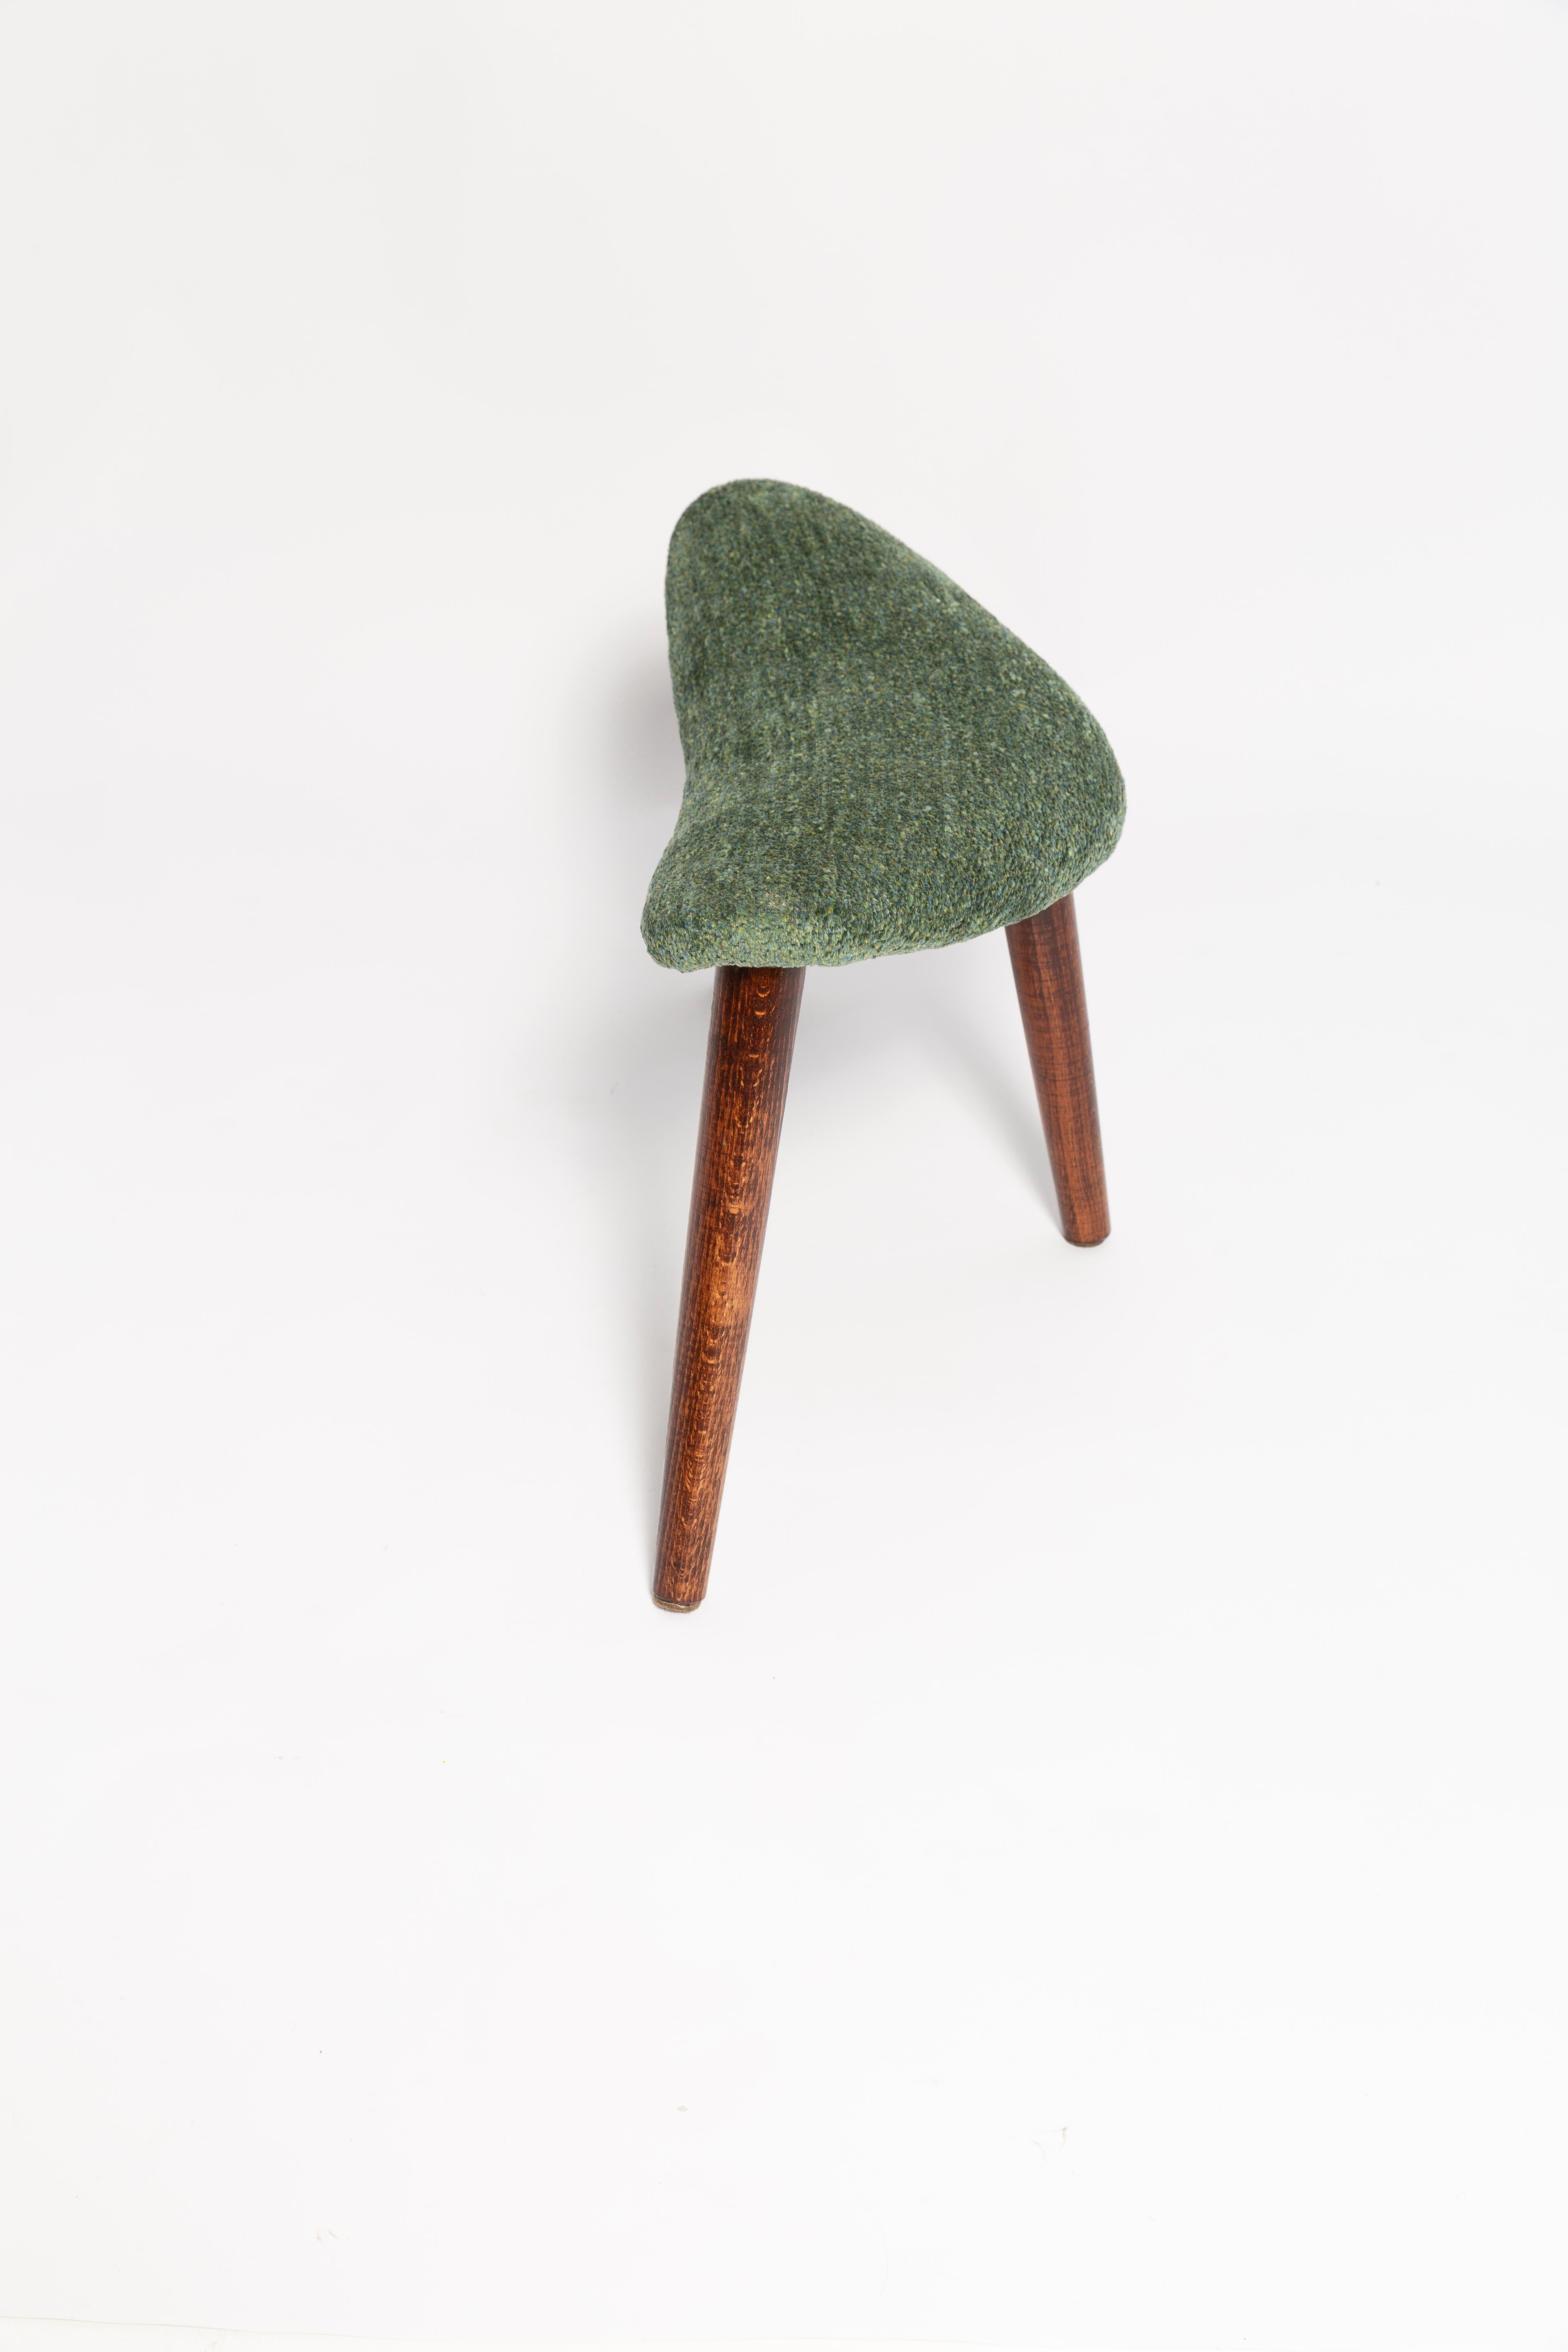 Contemporary Mini Heart Stool, Green Velvet, Dark Wood, Europe For Sale